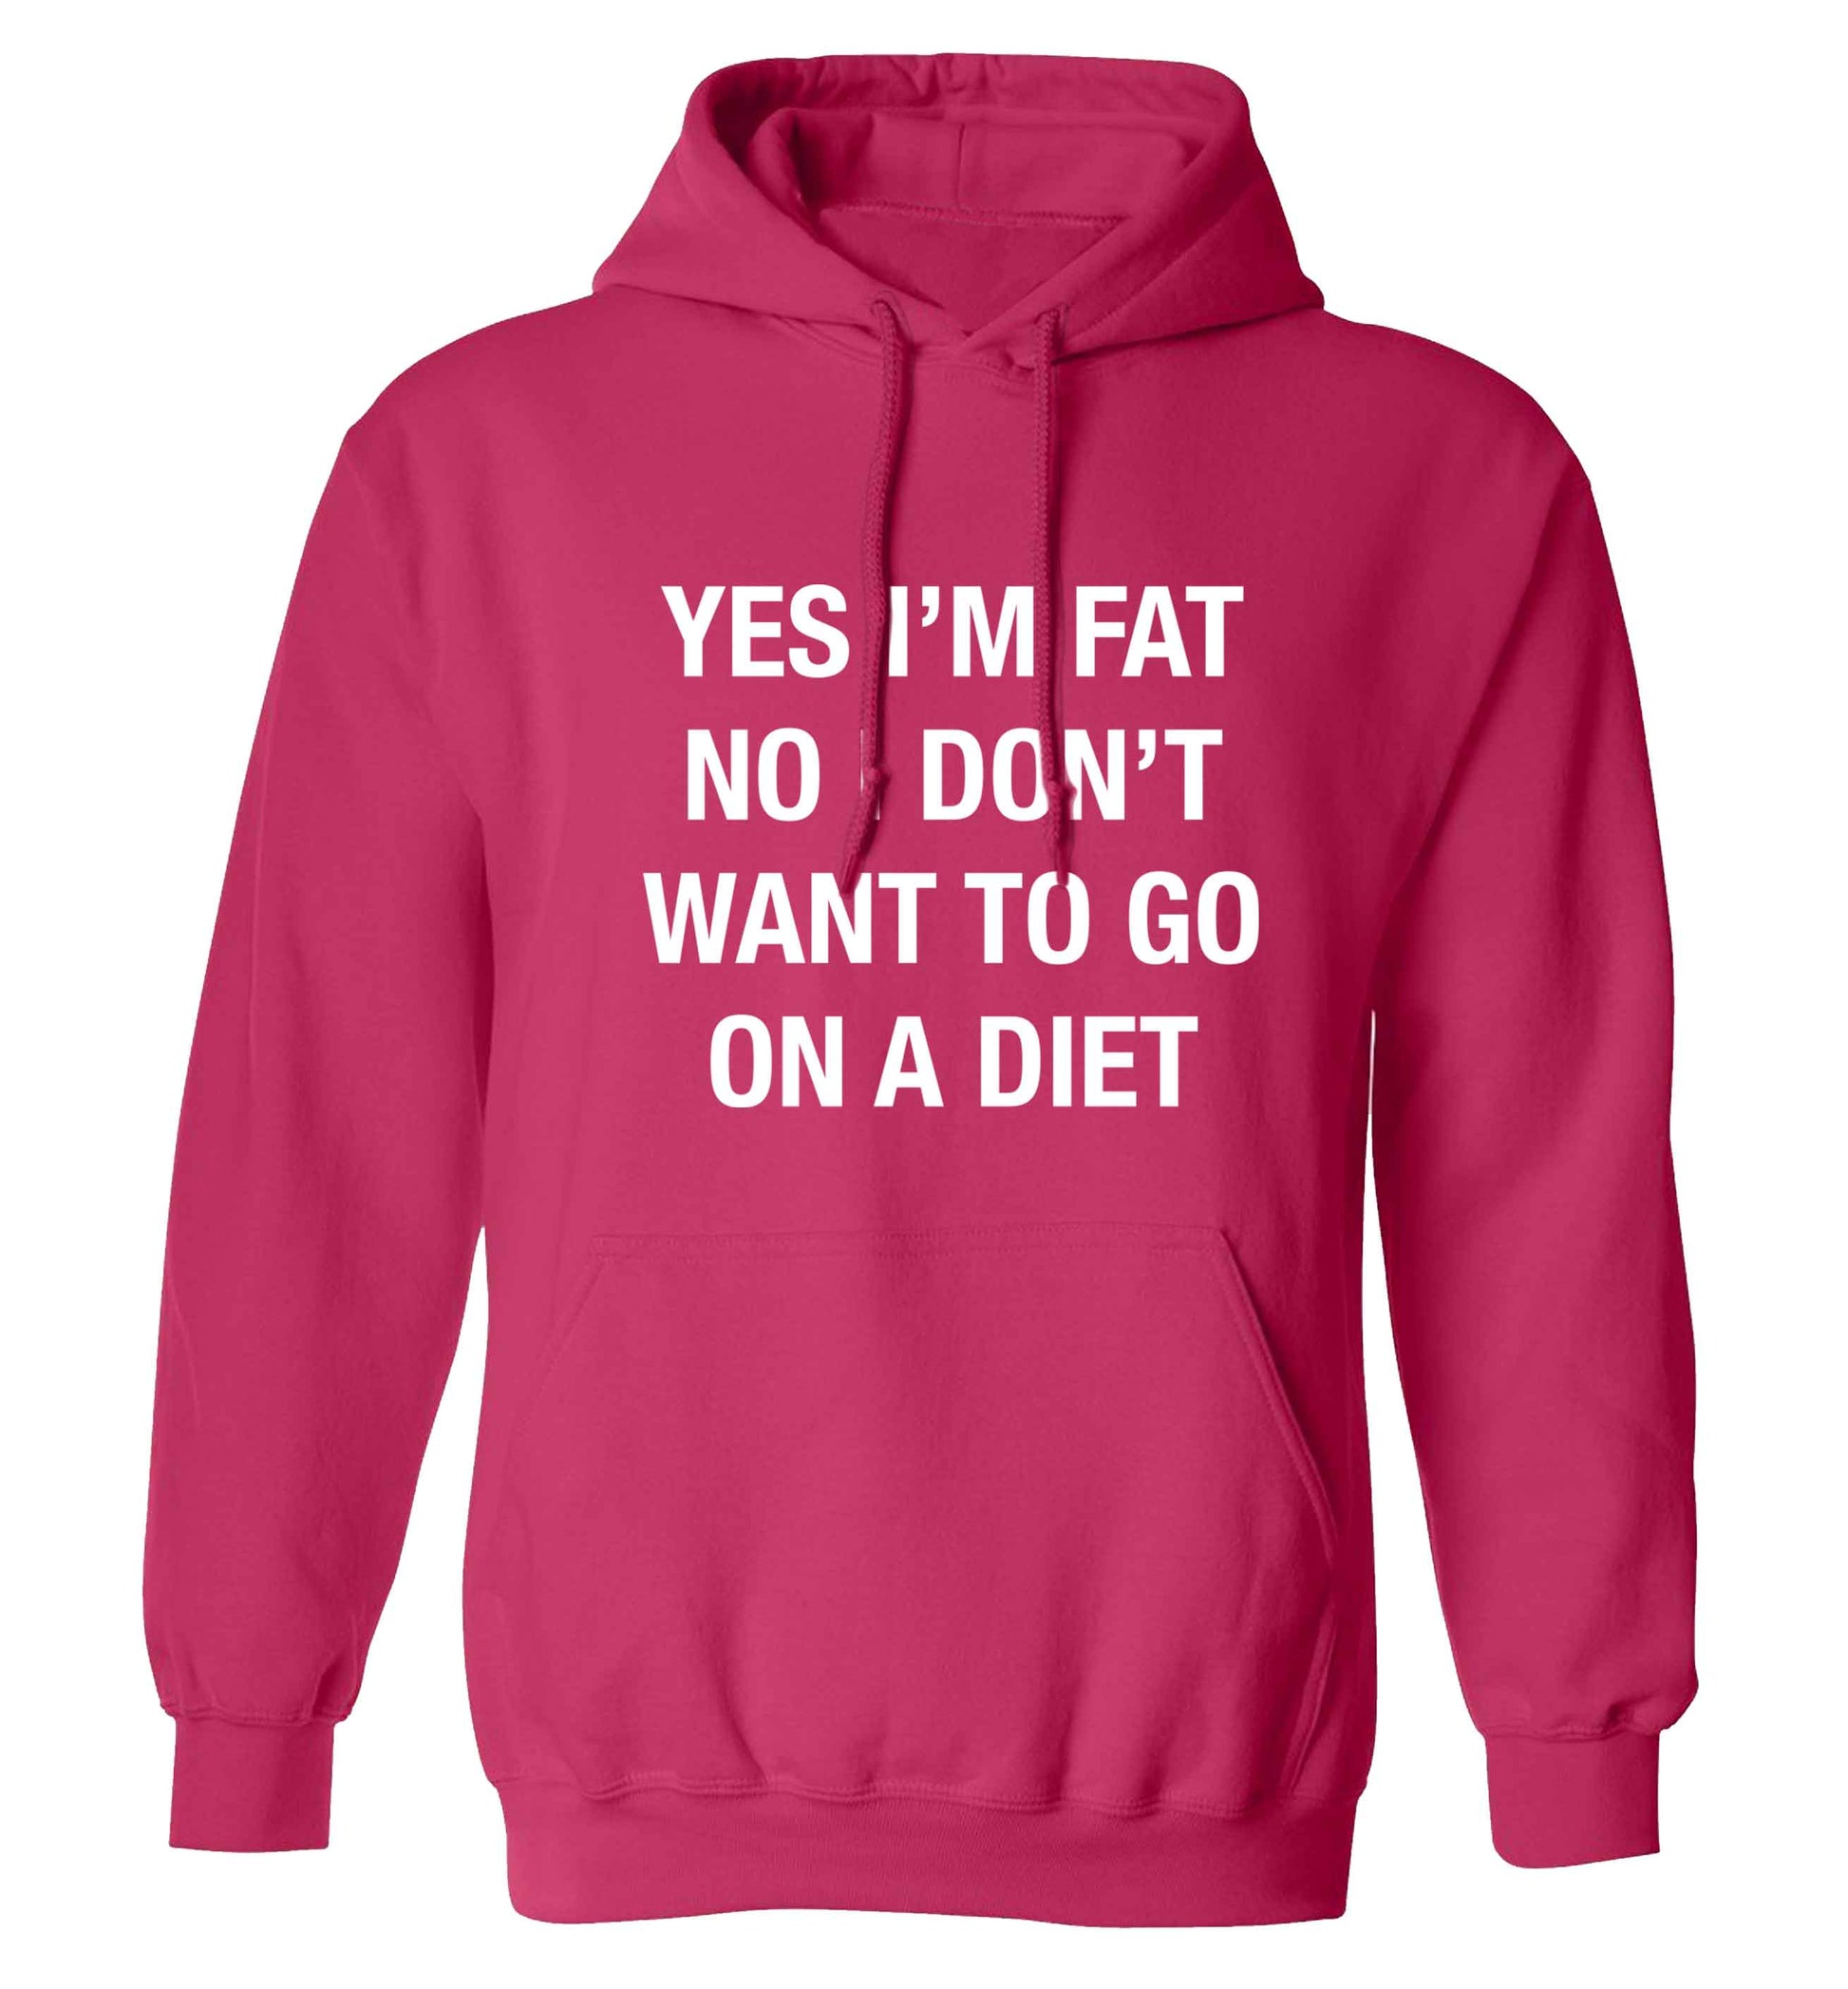 Yes I'm fat, no I don't want to go on a diet adults unisex pink hoodie 2XL